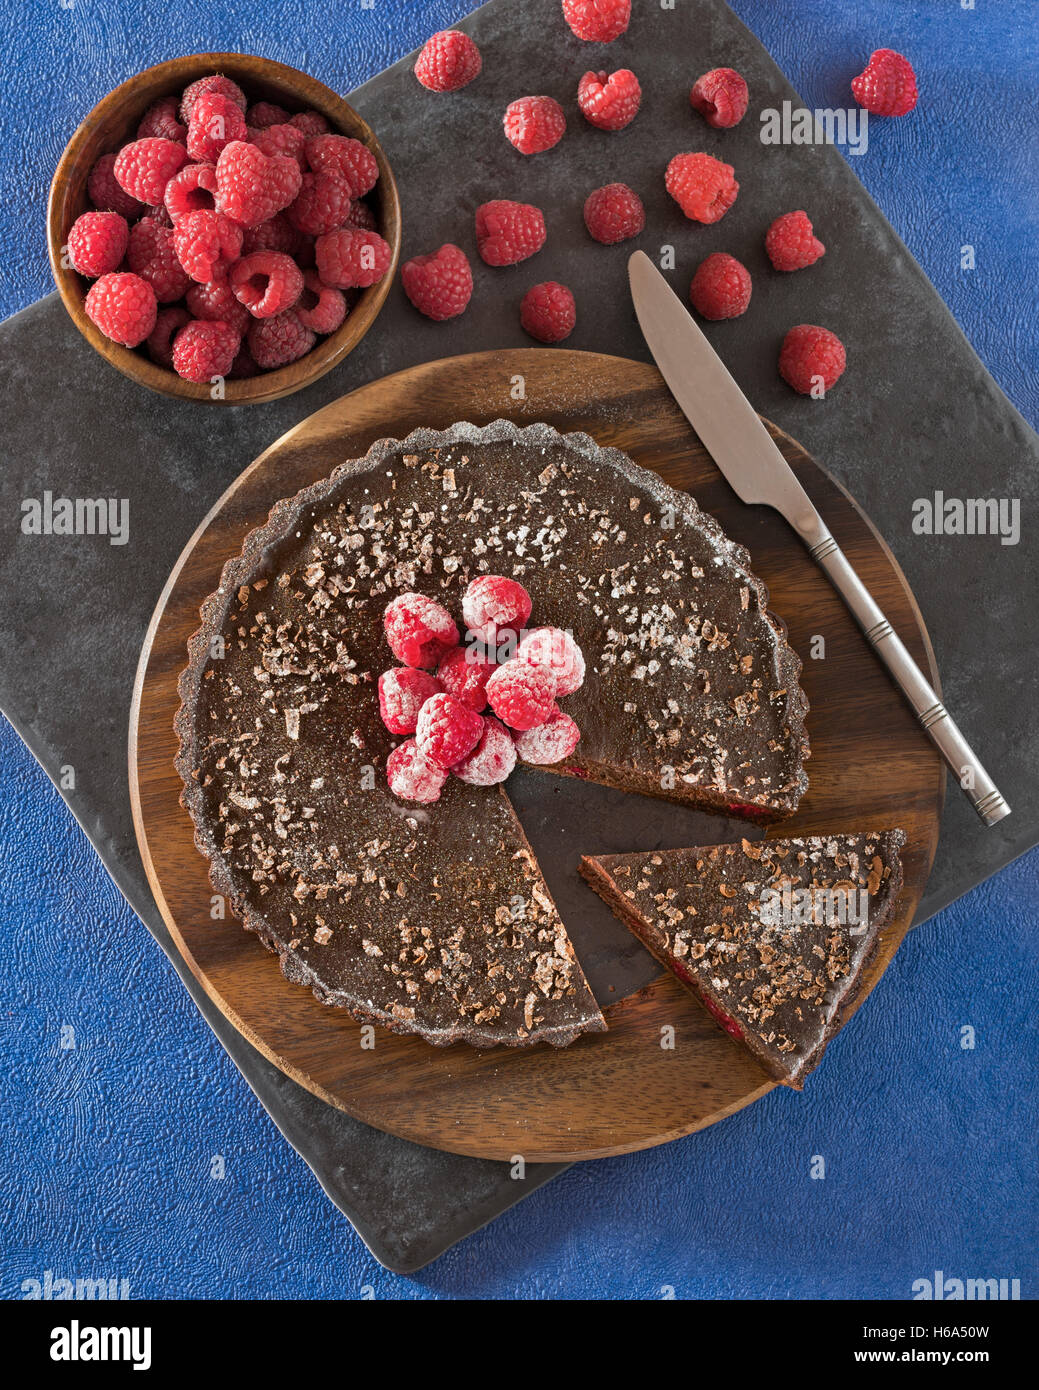 Chocolate and raspberry tart. Stock Photo